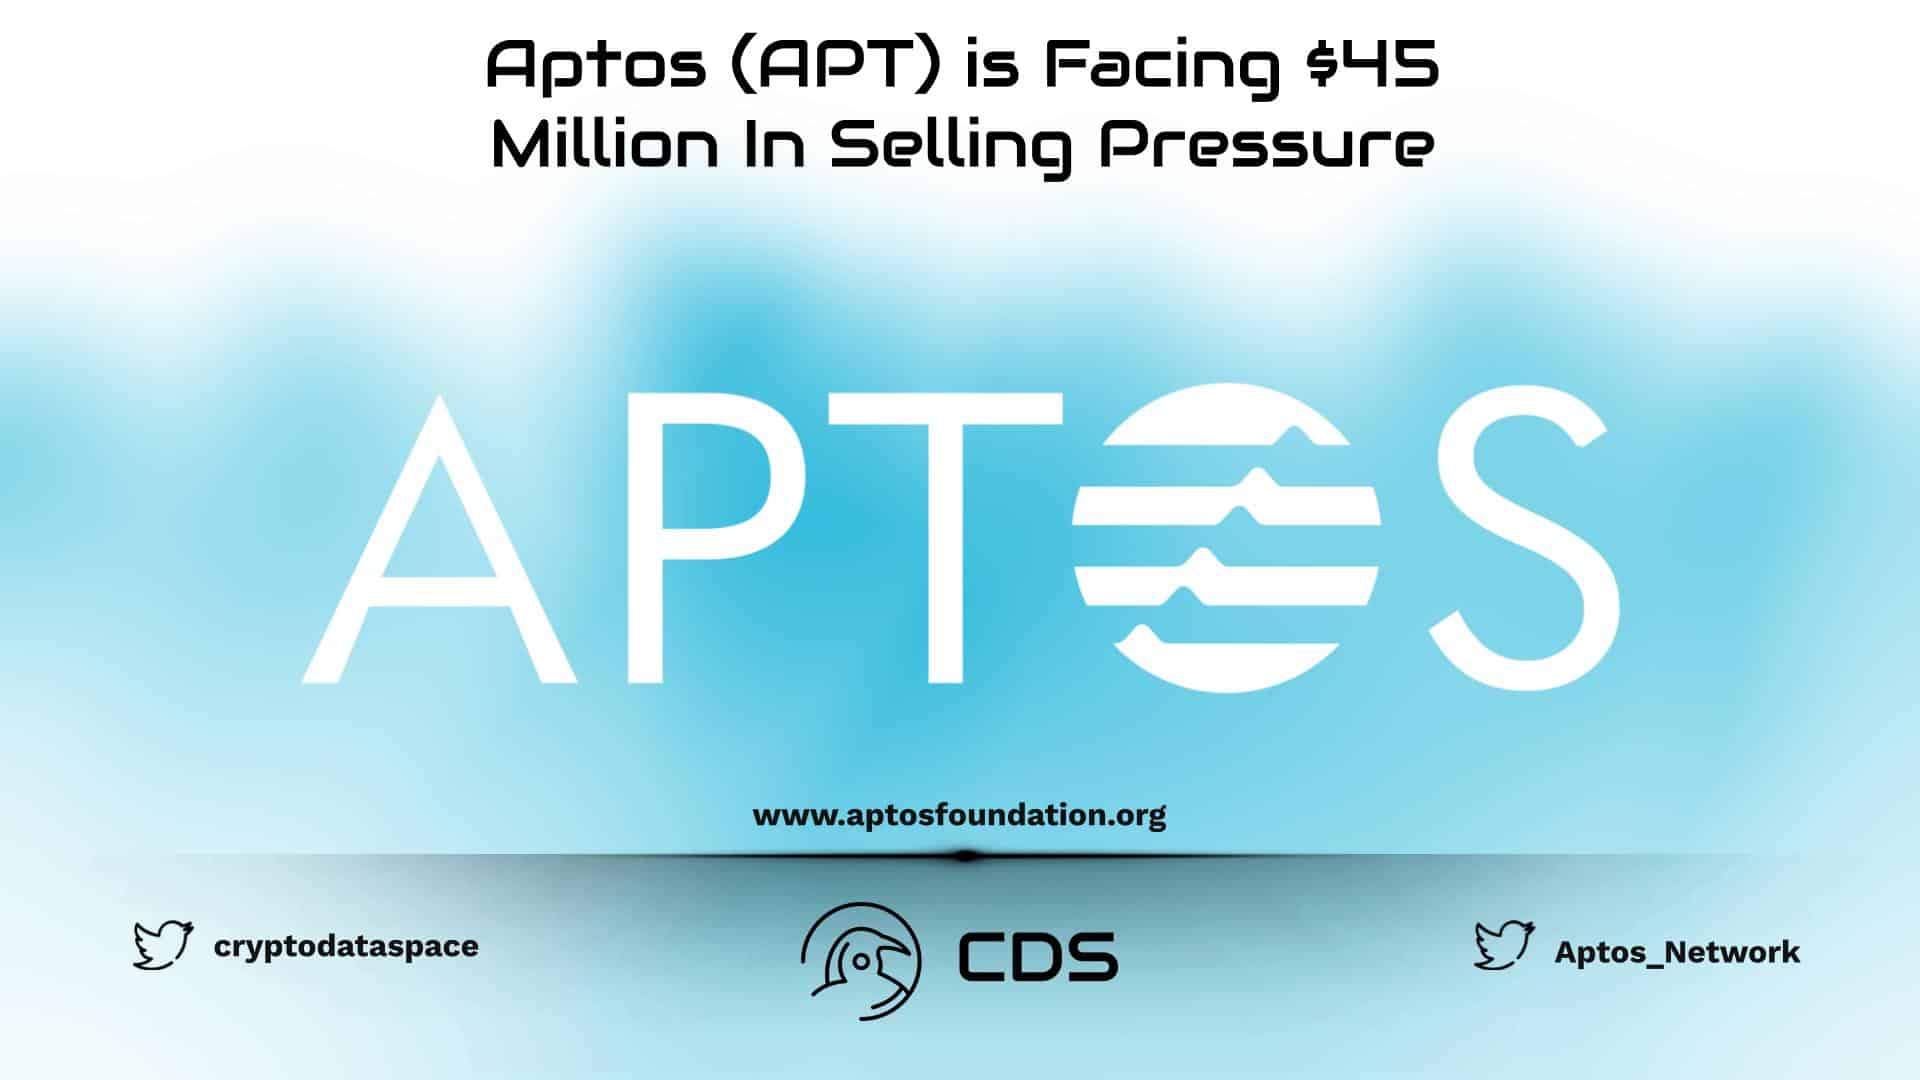 Aptos (APT) is Facing $45 Million In Selling Pressure